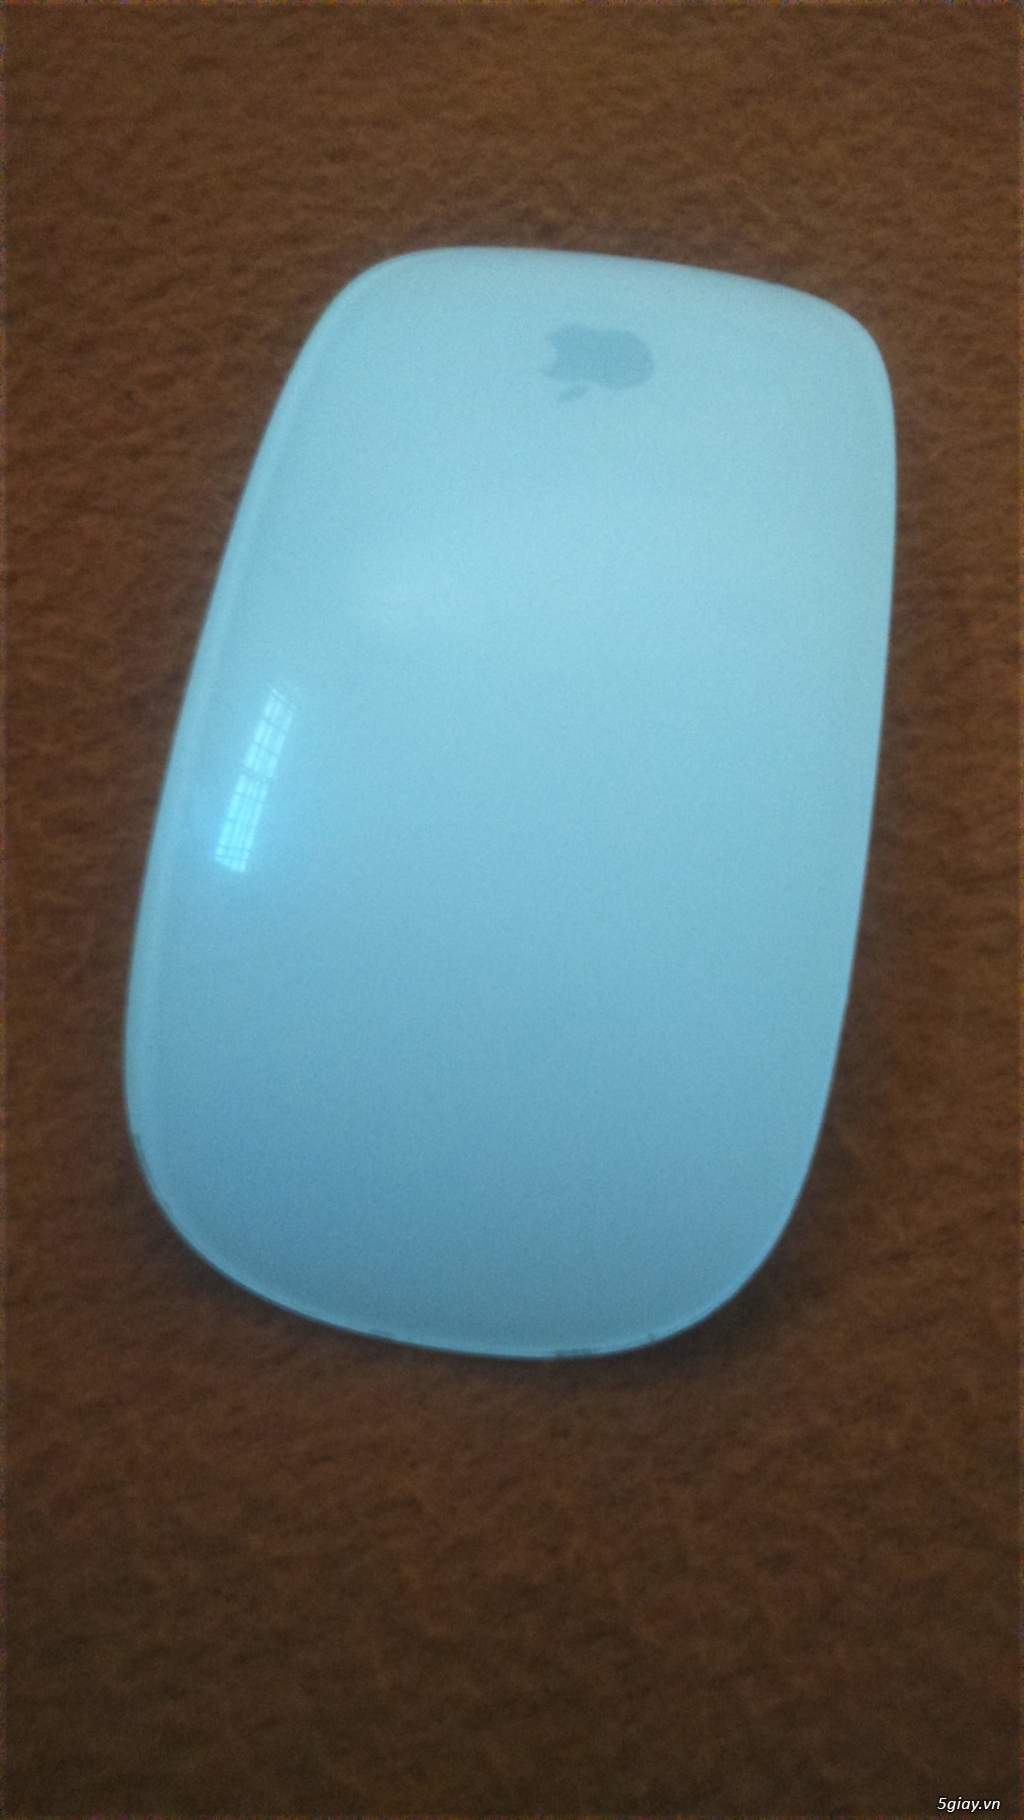 Apple Magic Mouse.E 23h00 15/06/19